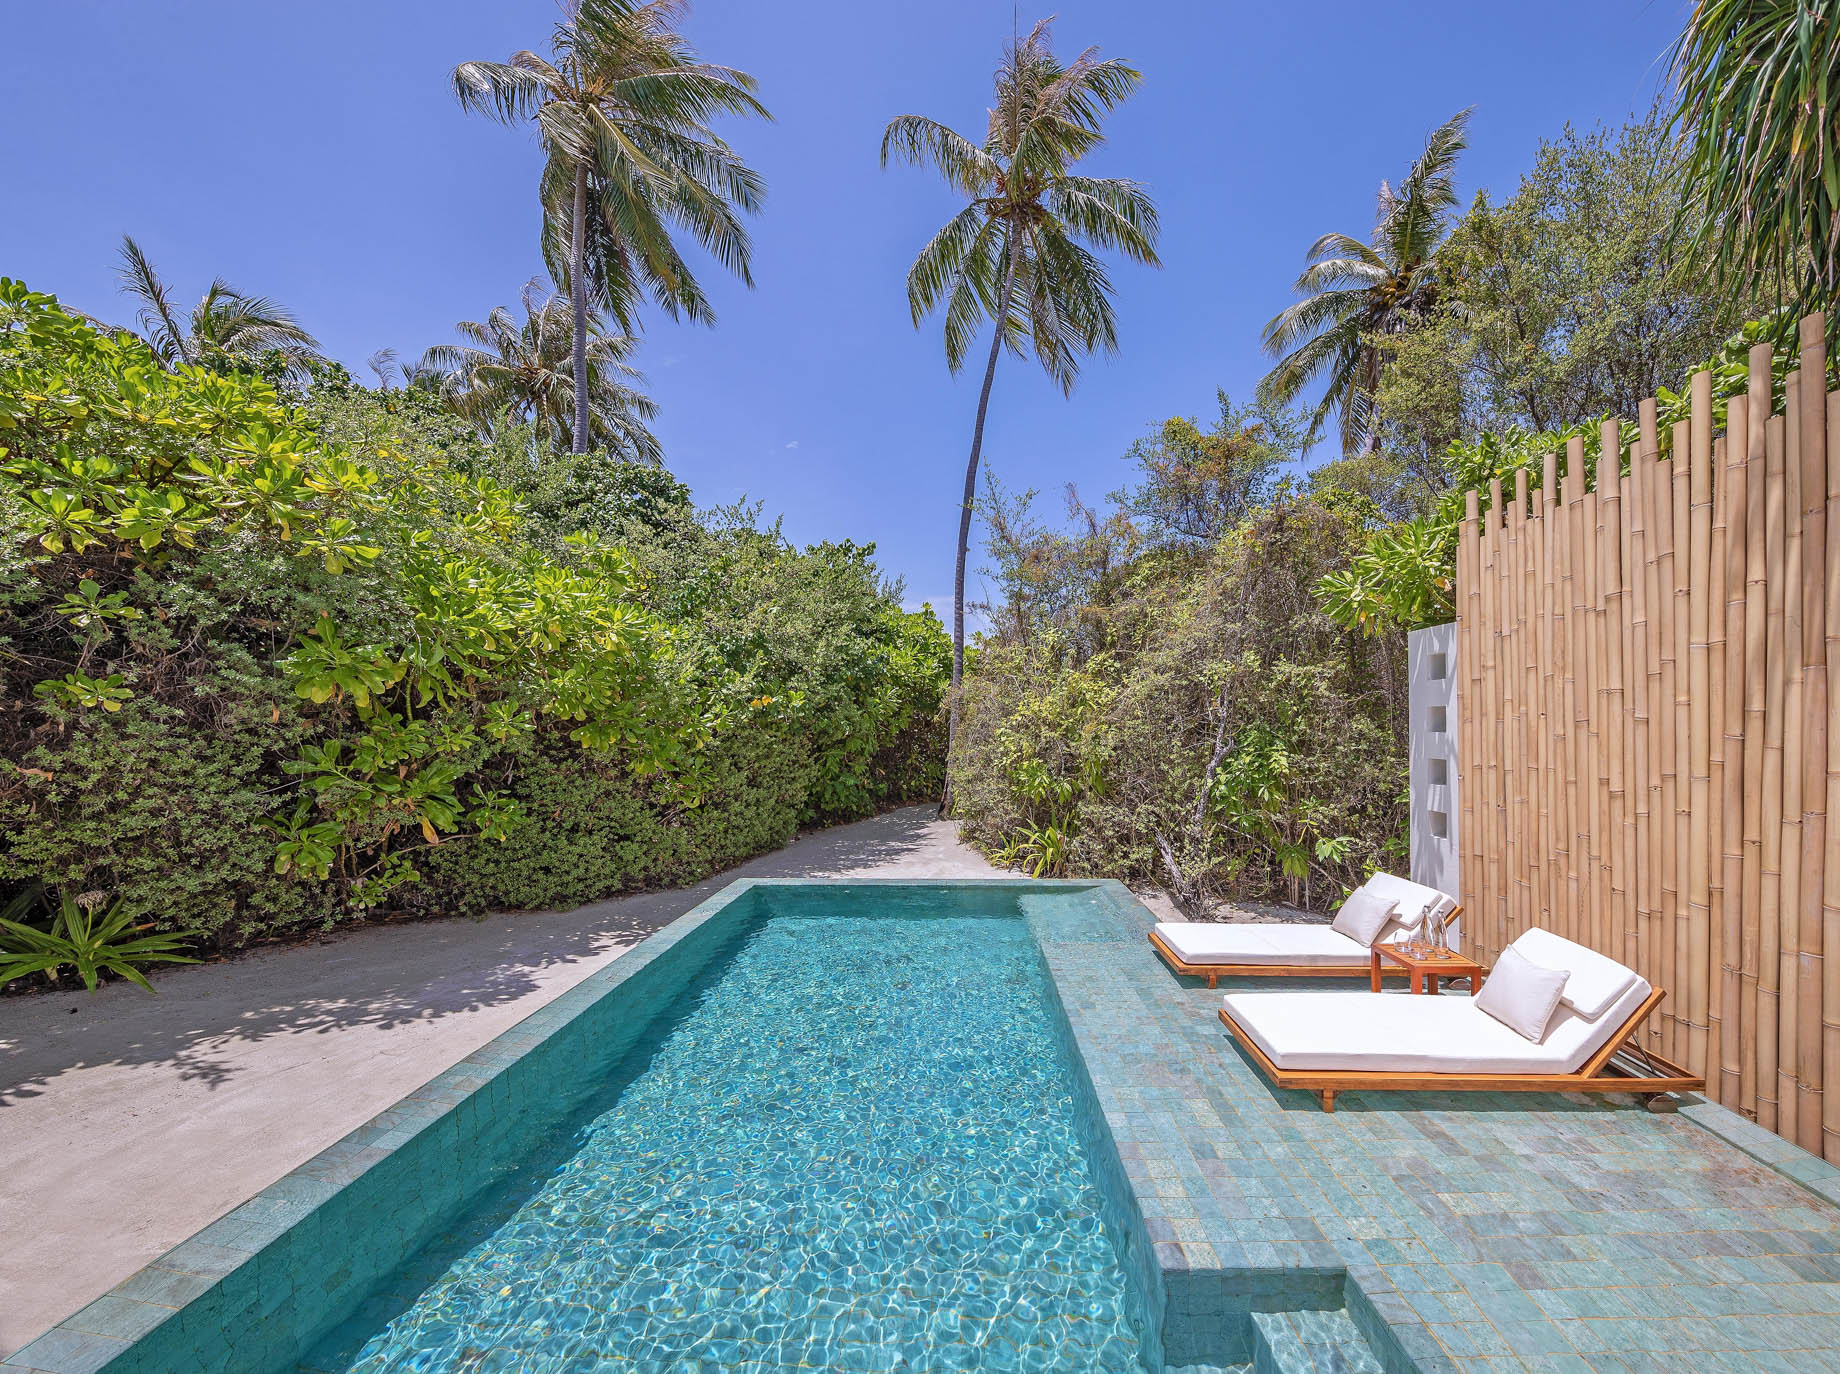 Anantara Kihavah Maldives Villas Resort – Baa Atoll, Maldives – Beach Pool Villa